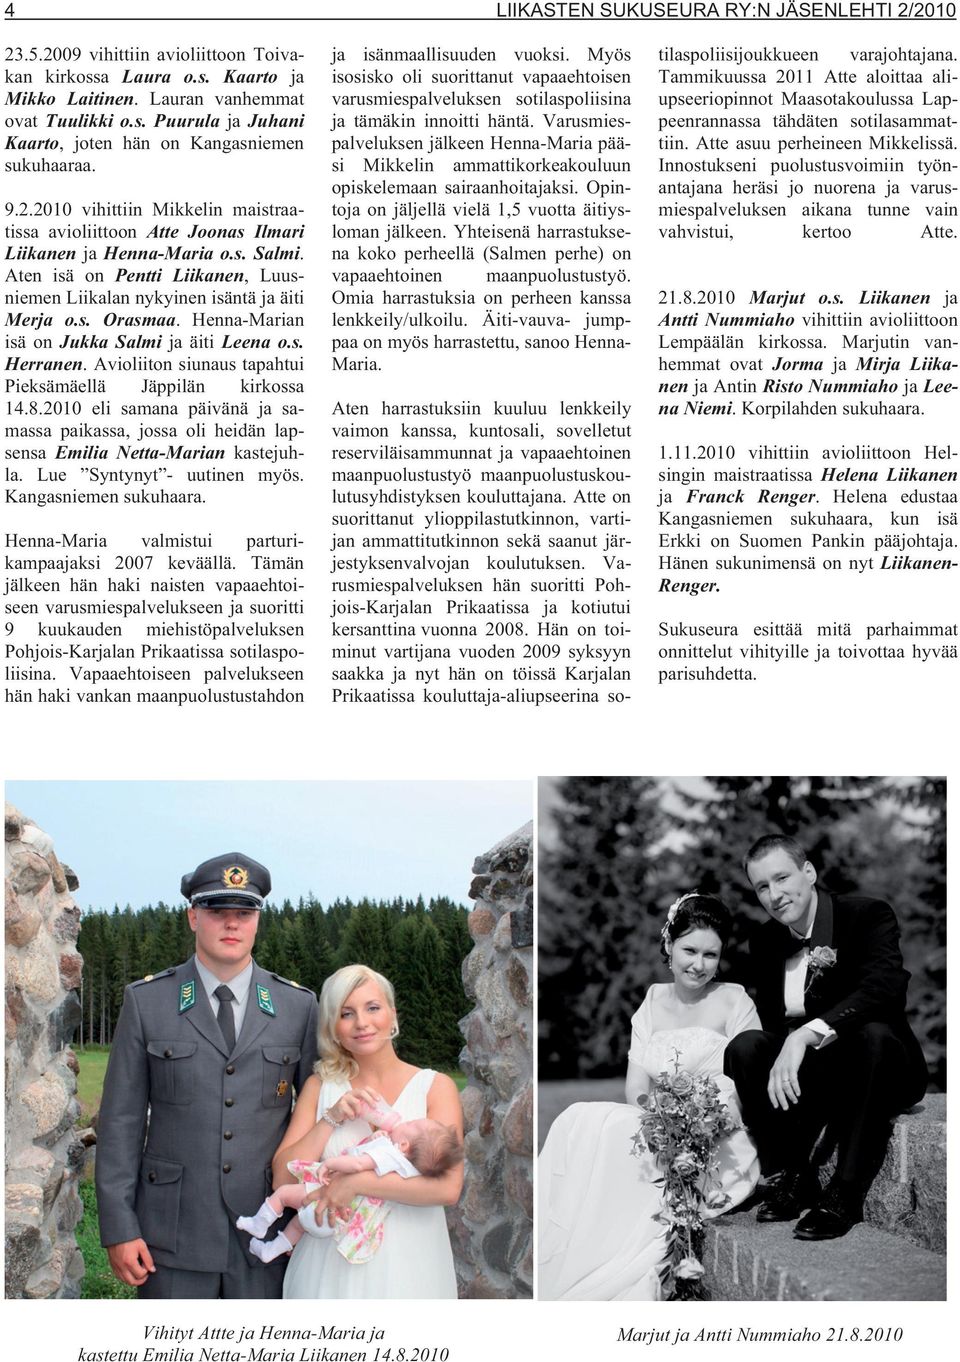 Henna-Marian isä on Jukka Salmi ja äiti Leena o.s. Herranen. Avioliiton siunaus tapahtui Pieksämäellä Jäppilän kirkossa 14.8.